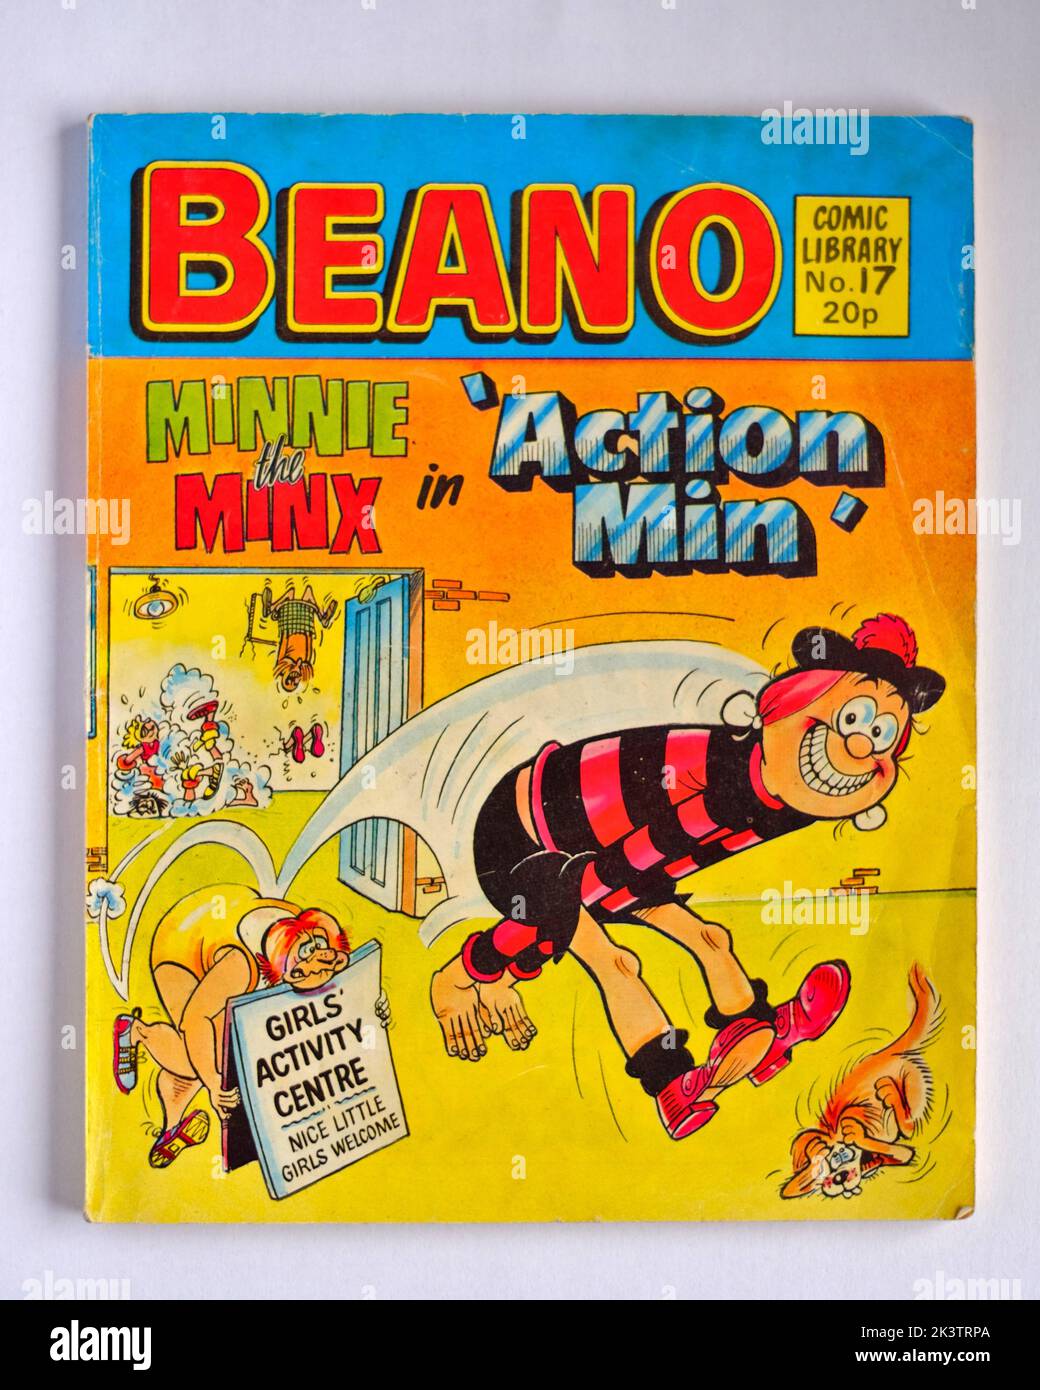 Beano número 17 de la biblioteca de cómics con Minnie the Minx Foto de stock